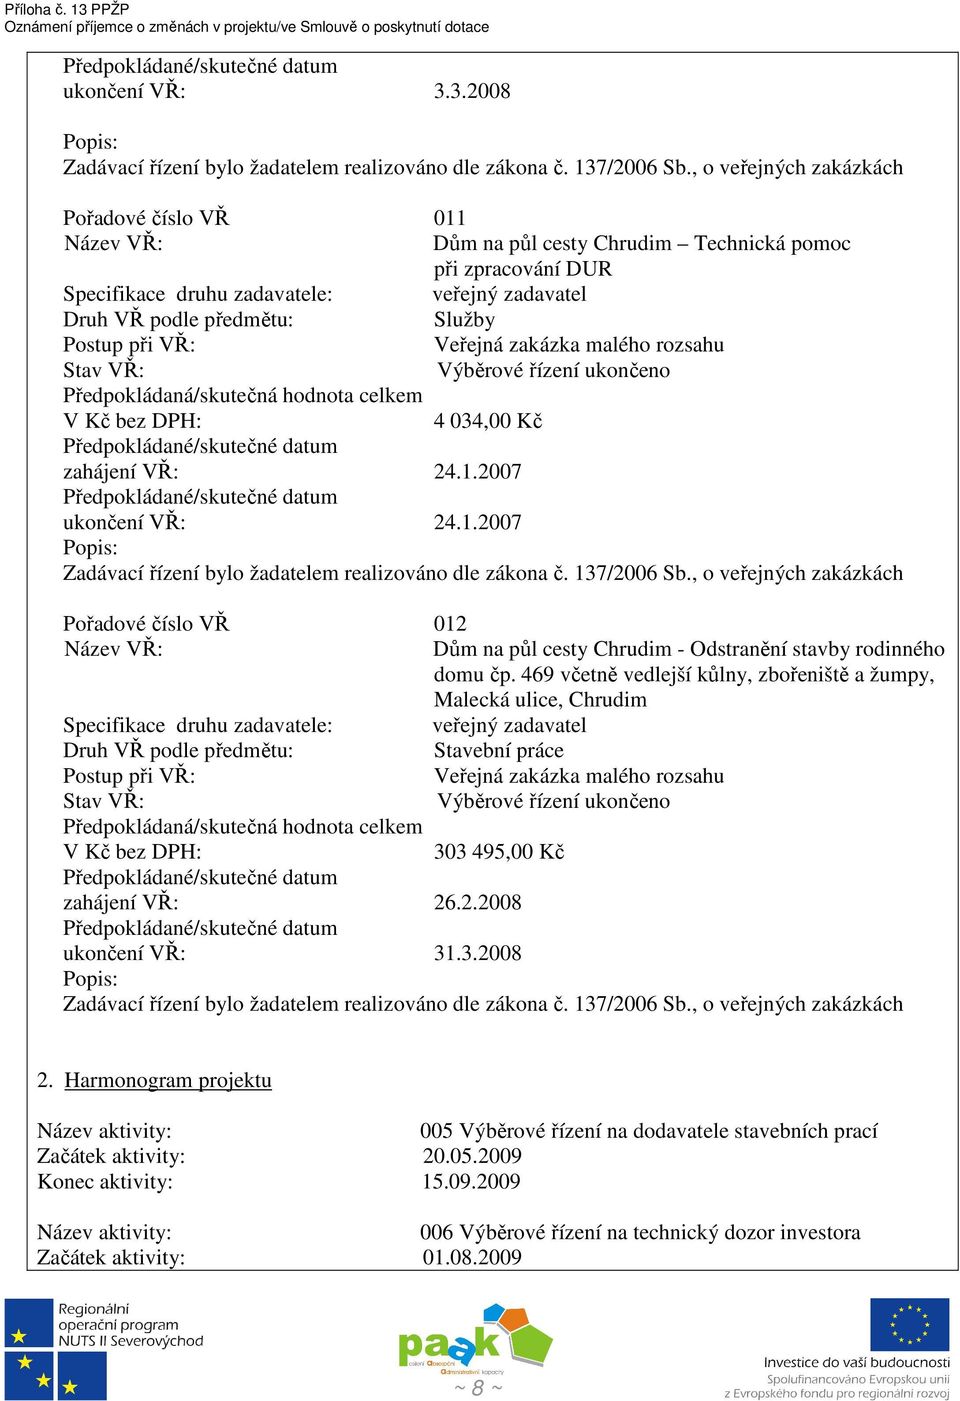 137/2006 Sb., o veřejných zakázkách Pořadové číslo VŘ 012 Dům na půl cesty Chrudim - Odstranění stavby rodinného domu čp.